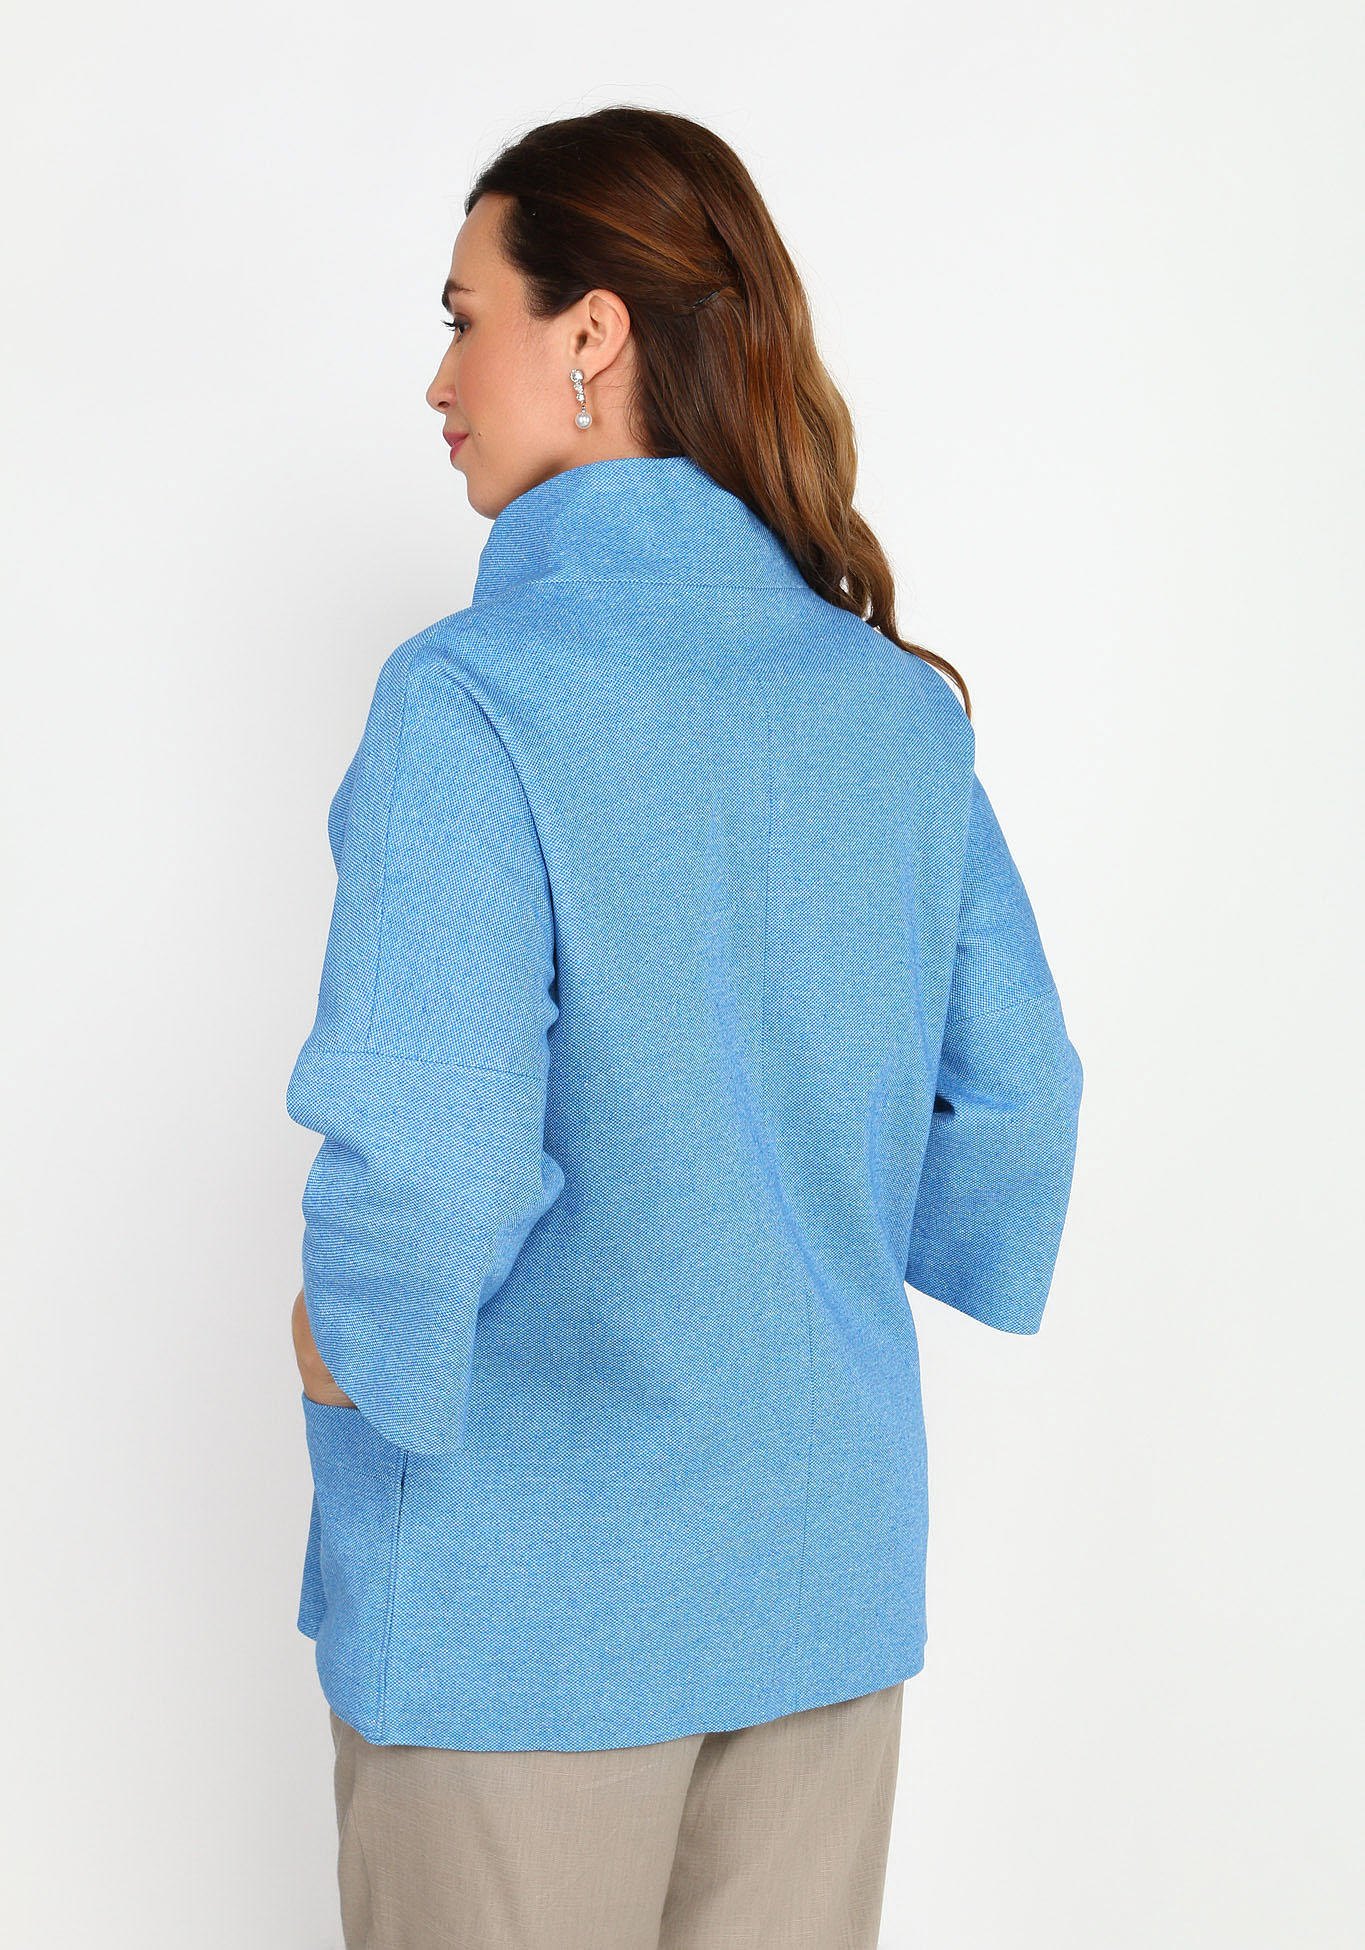 Пальто облегченное с воротником-стойкой Новое Время, размер 48, цвет синий укороченная модель - фото 6